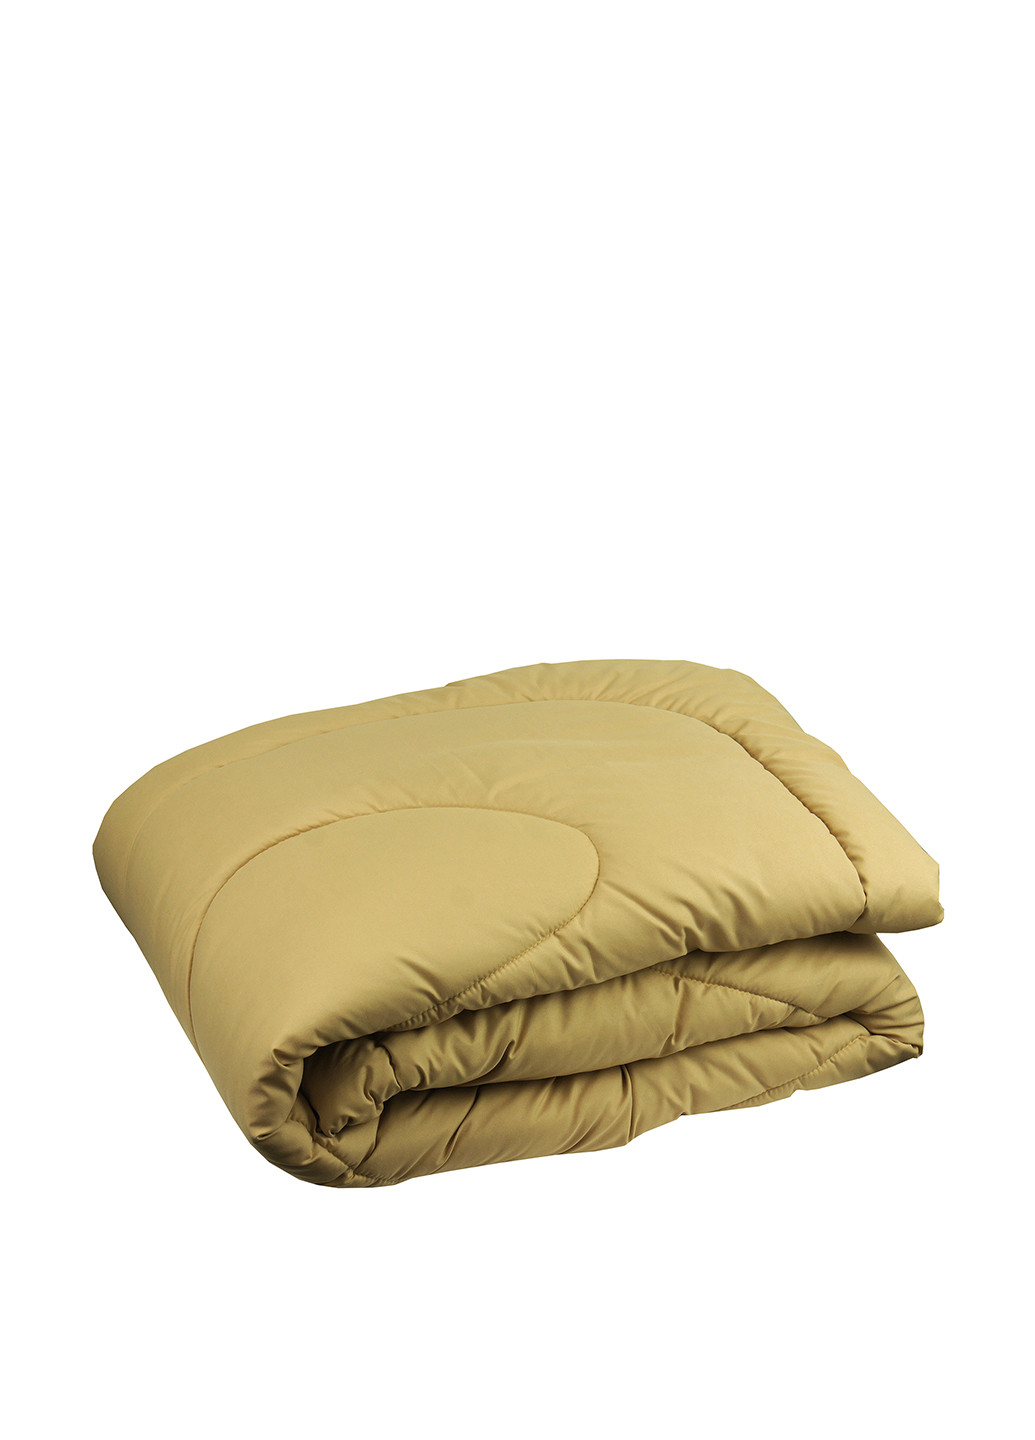 Одеяло силиконовое, 172х205 см Руно однотонное пшеничное